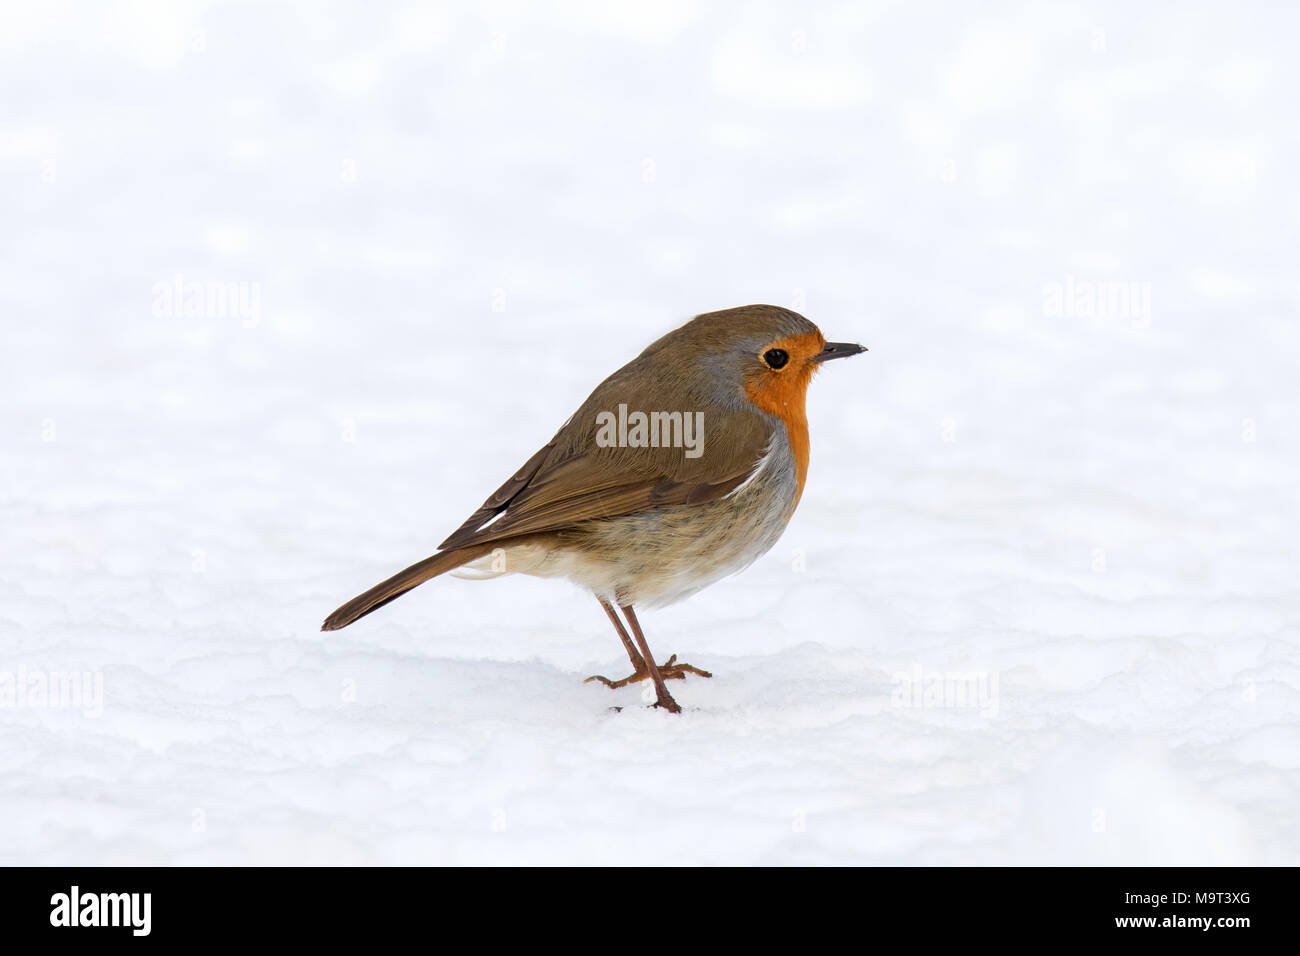 European robin (Erithacus rubecula aux abords de nourriture) sur le terrain dans la neige en hiver Banque D'Images